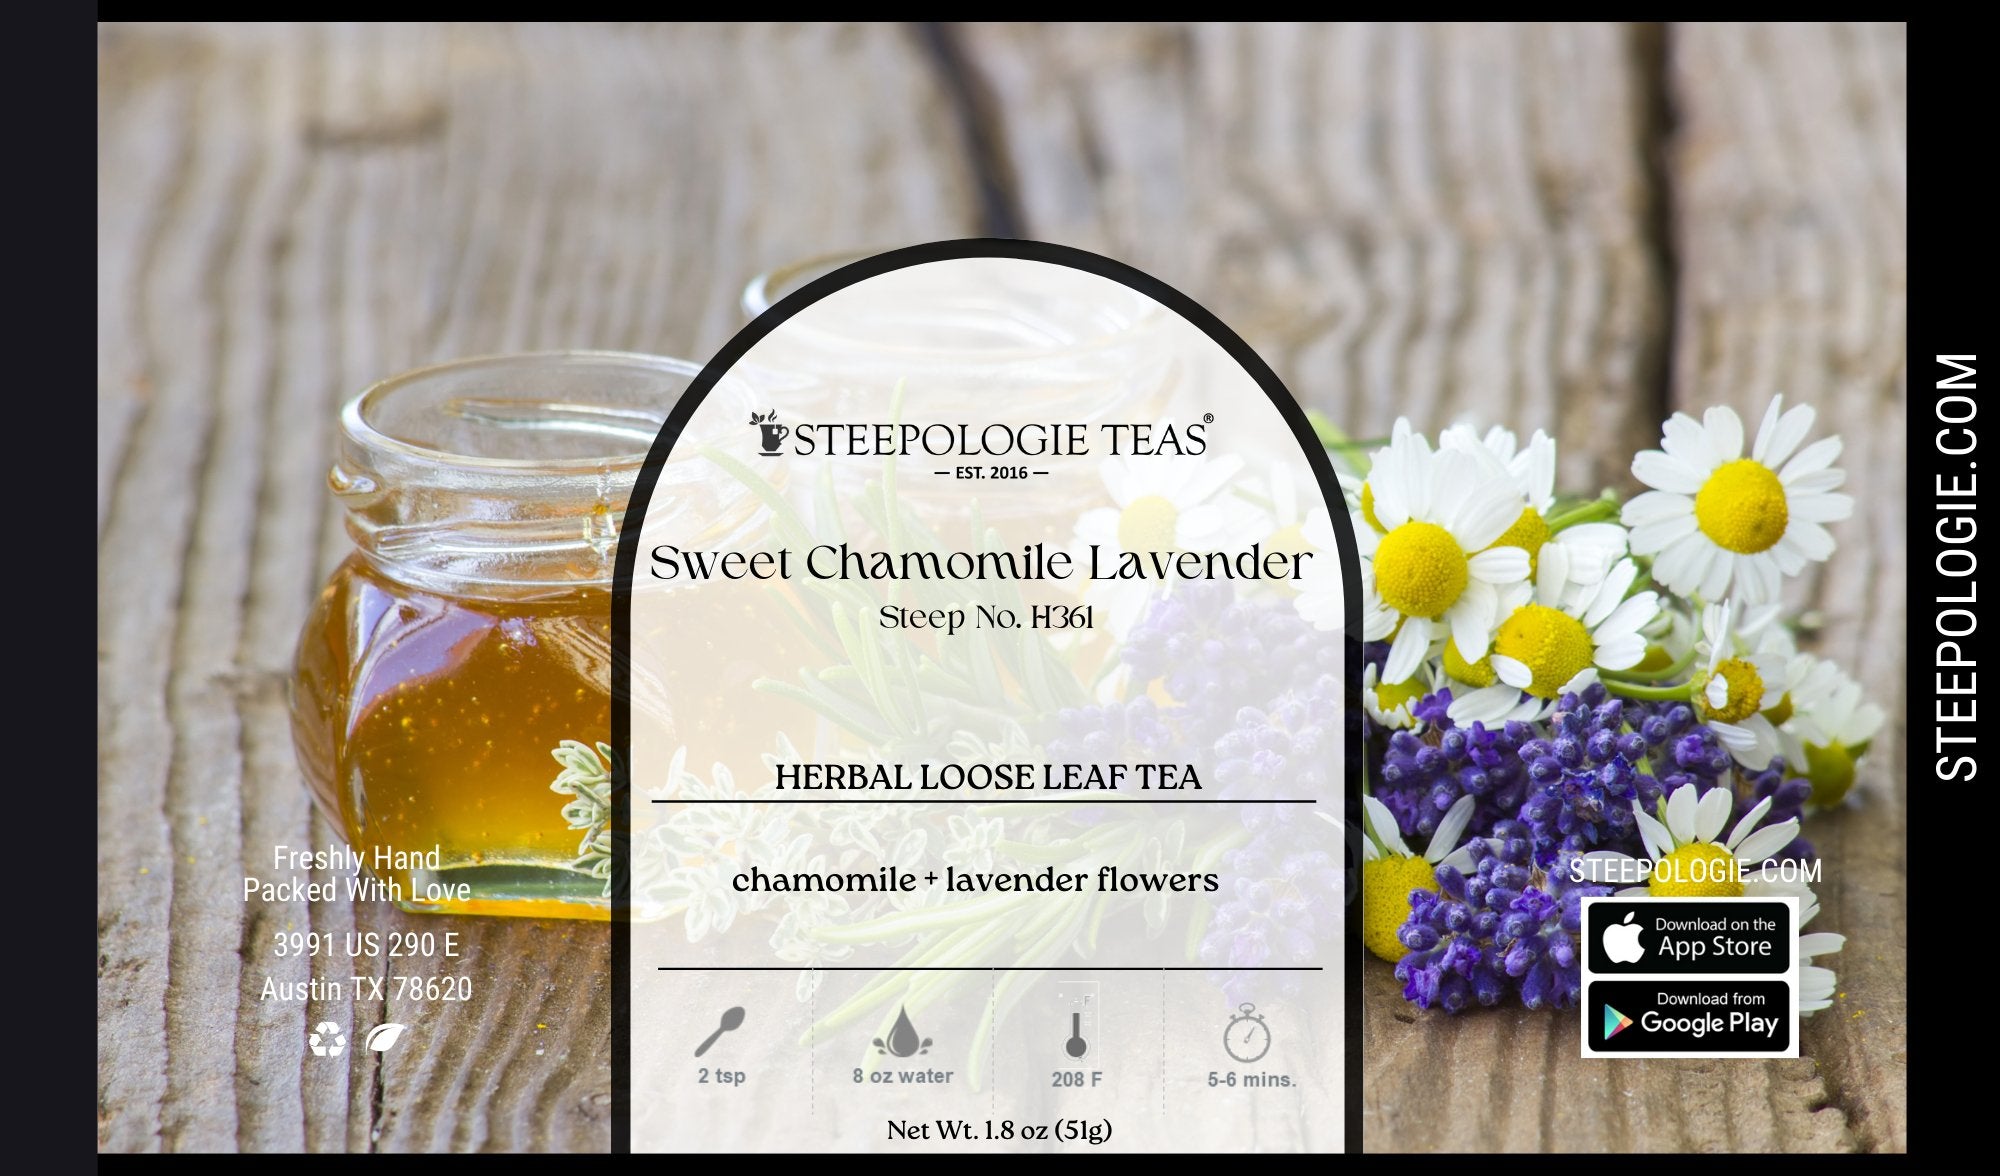 Sweet Chamomile Lavender Tea (Steep No. H361) - Steepologie